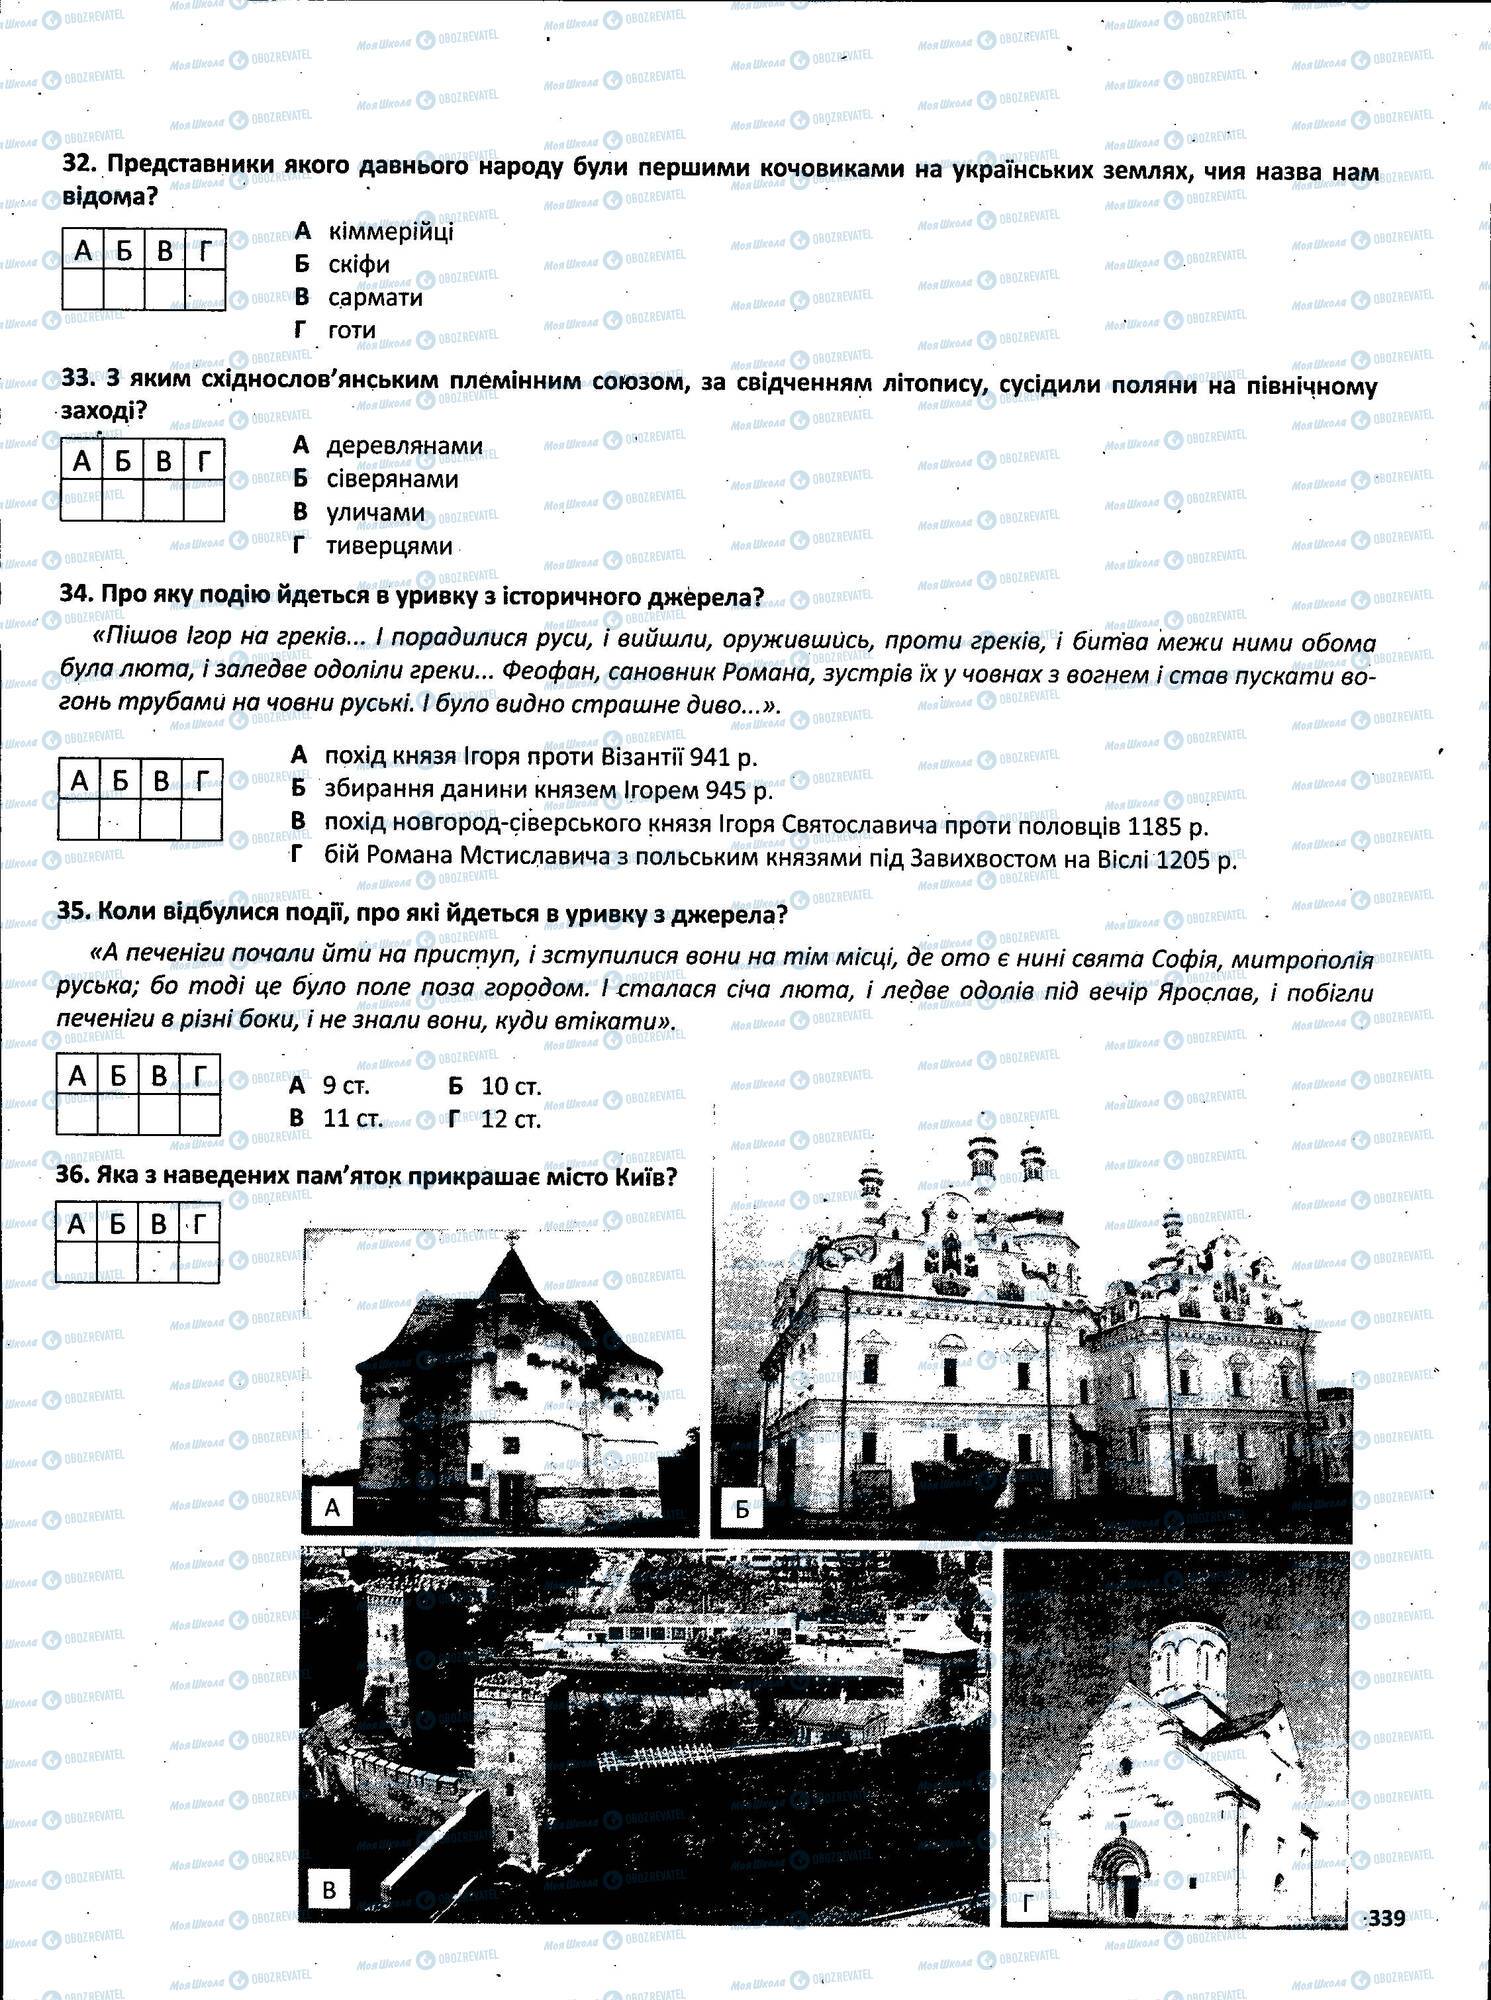 ЗНО История Украины 11 класс страница 339